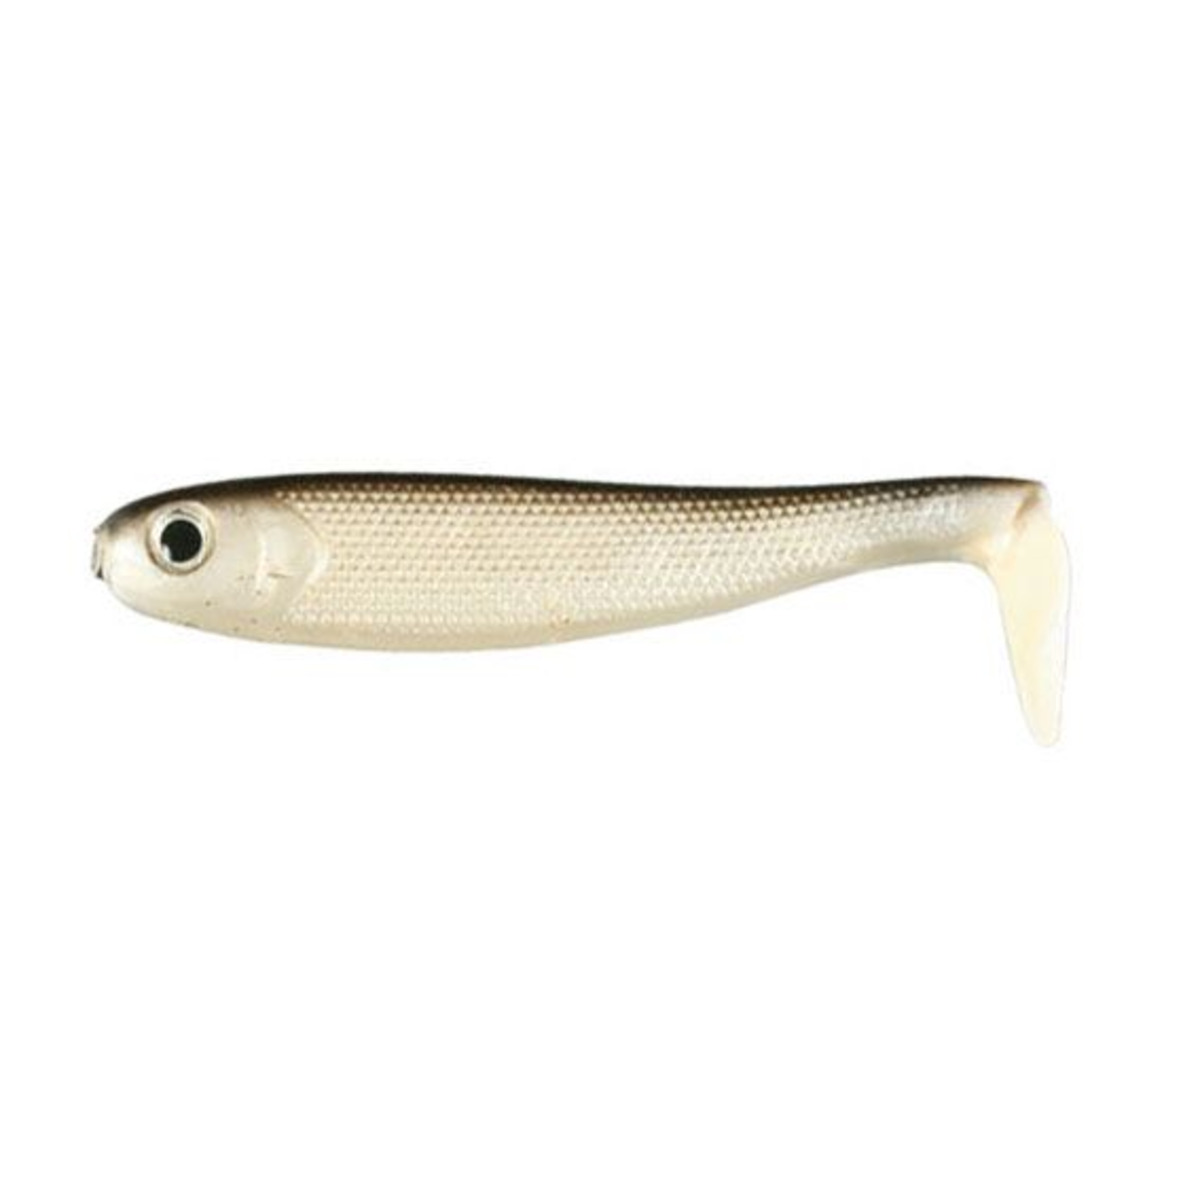 Nomura Live Fish - 8.5 cm - 8 g - Multicolor Fish